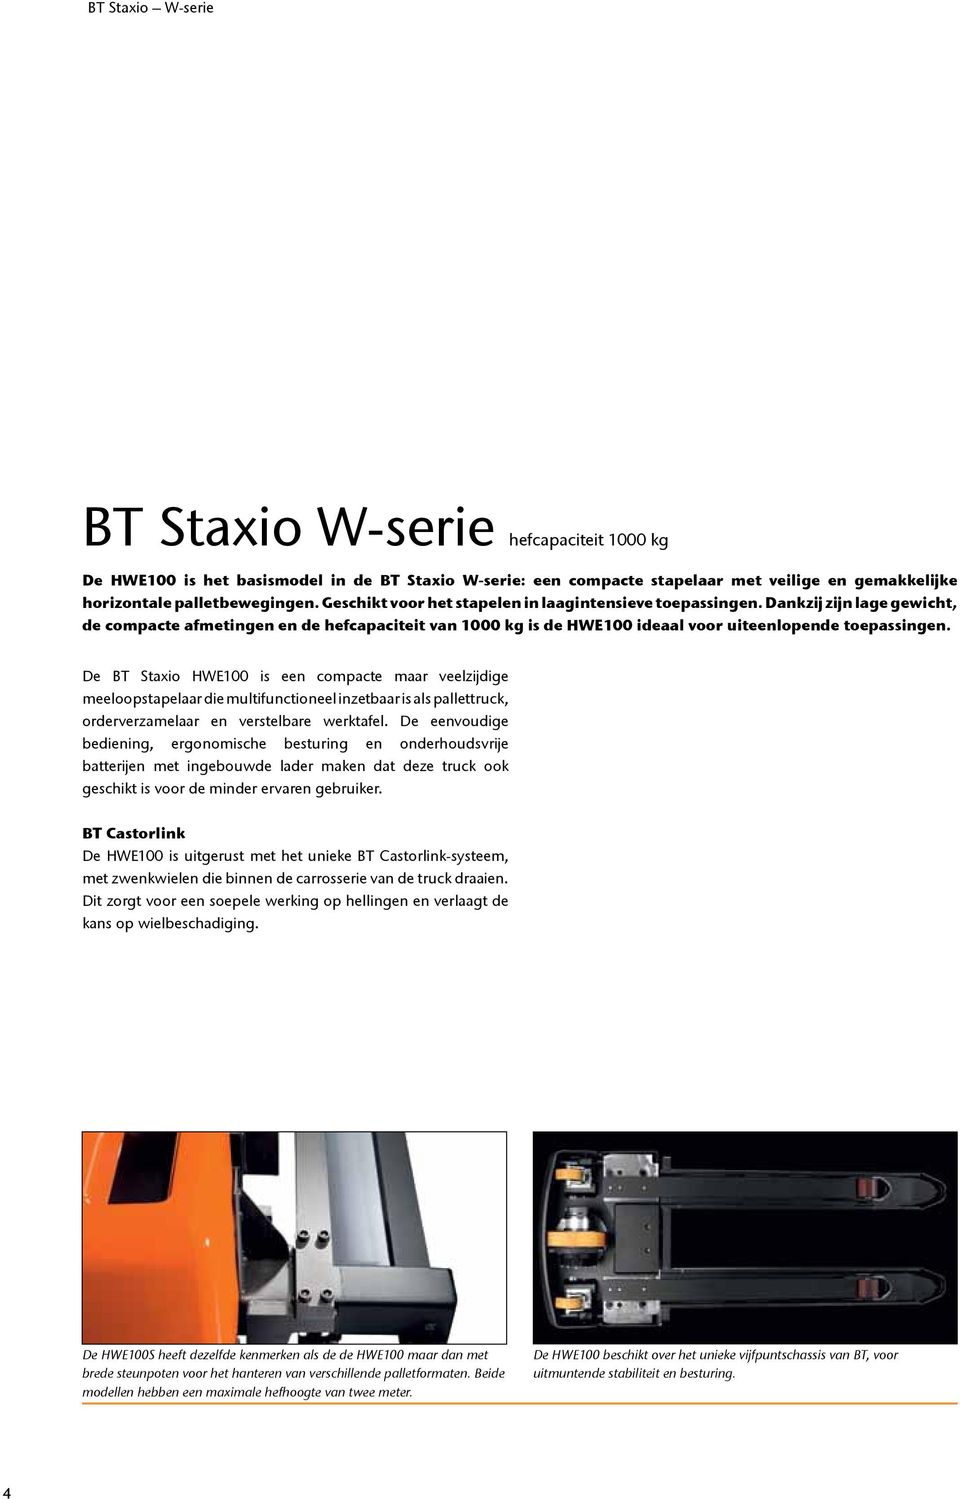 De BT Staxio HWE100 is een compacte maar veelzijdige meeloopstapelaar die multifunctioneel inzetbaar is als pallettruck, orderverzamelaar en verstelbare werktafel.